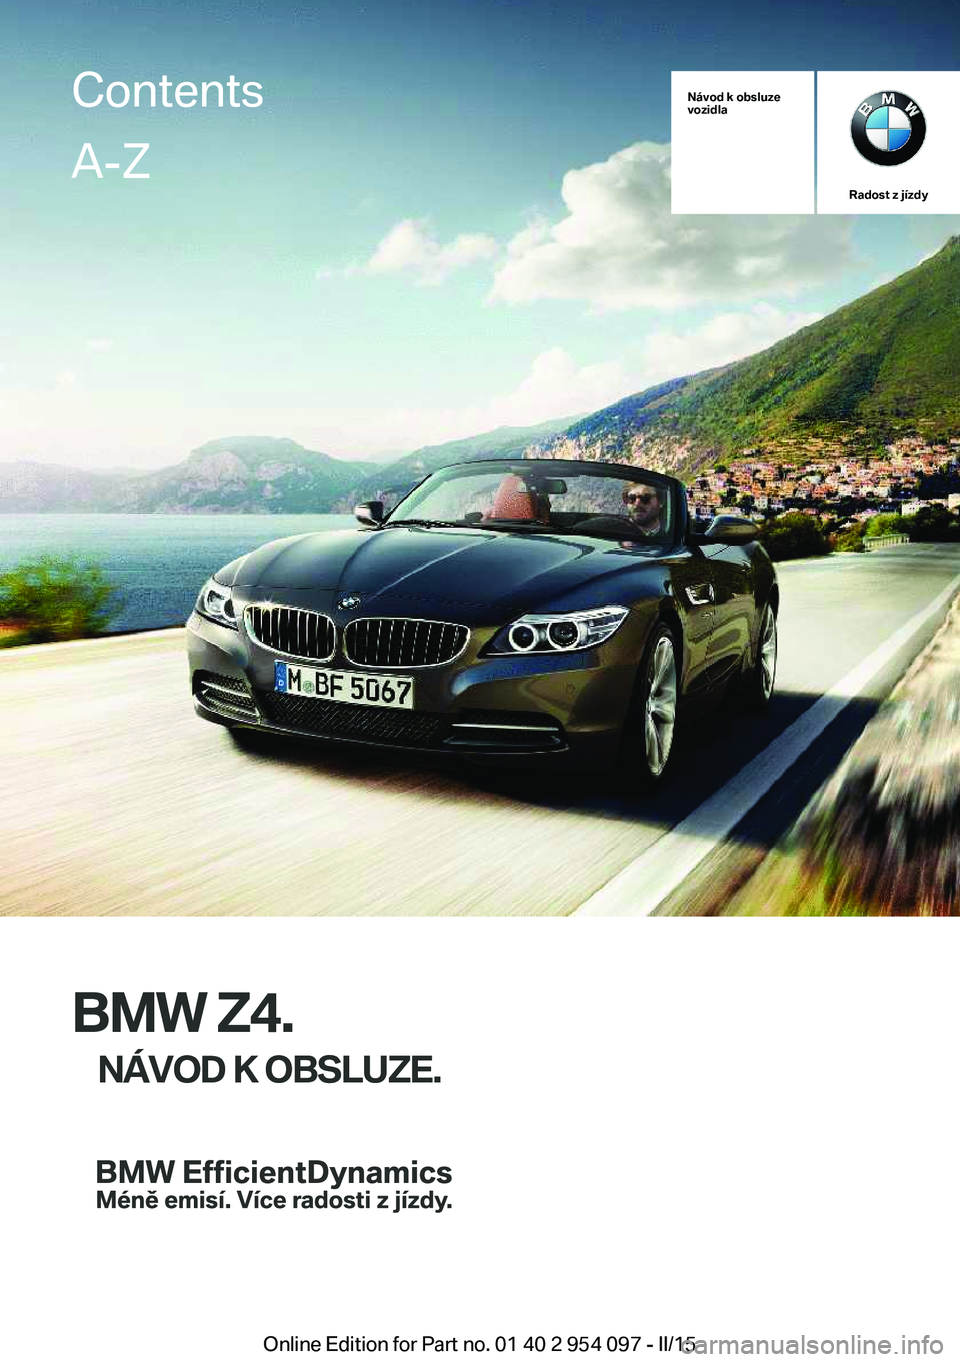 BMW Z4 2016  Návod na použití (in Czech) Návod k obsluze
vozidla
Radost z jízdy
BMW Z4.
NÁVOD K OBSLUZE.
ContentsA-Z
Online Edition for Part no. 01 40 2 954 097 - II/15   